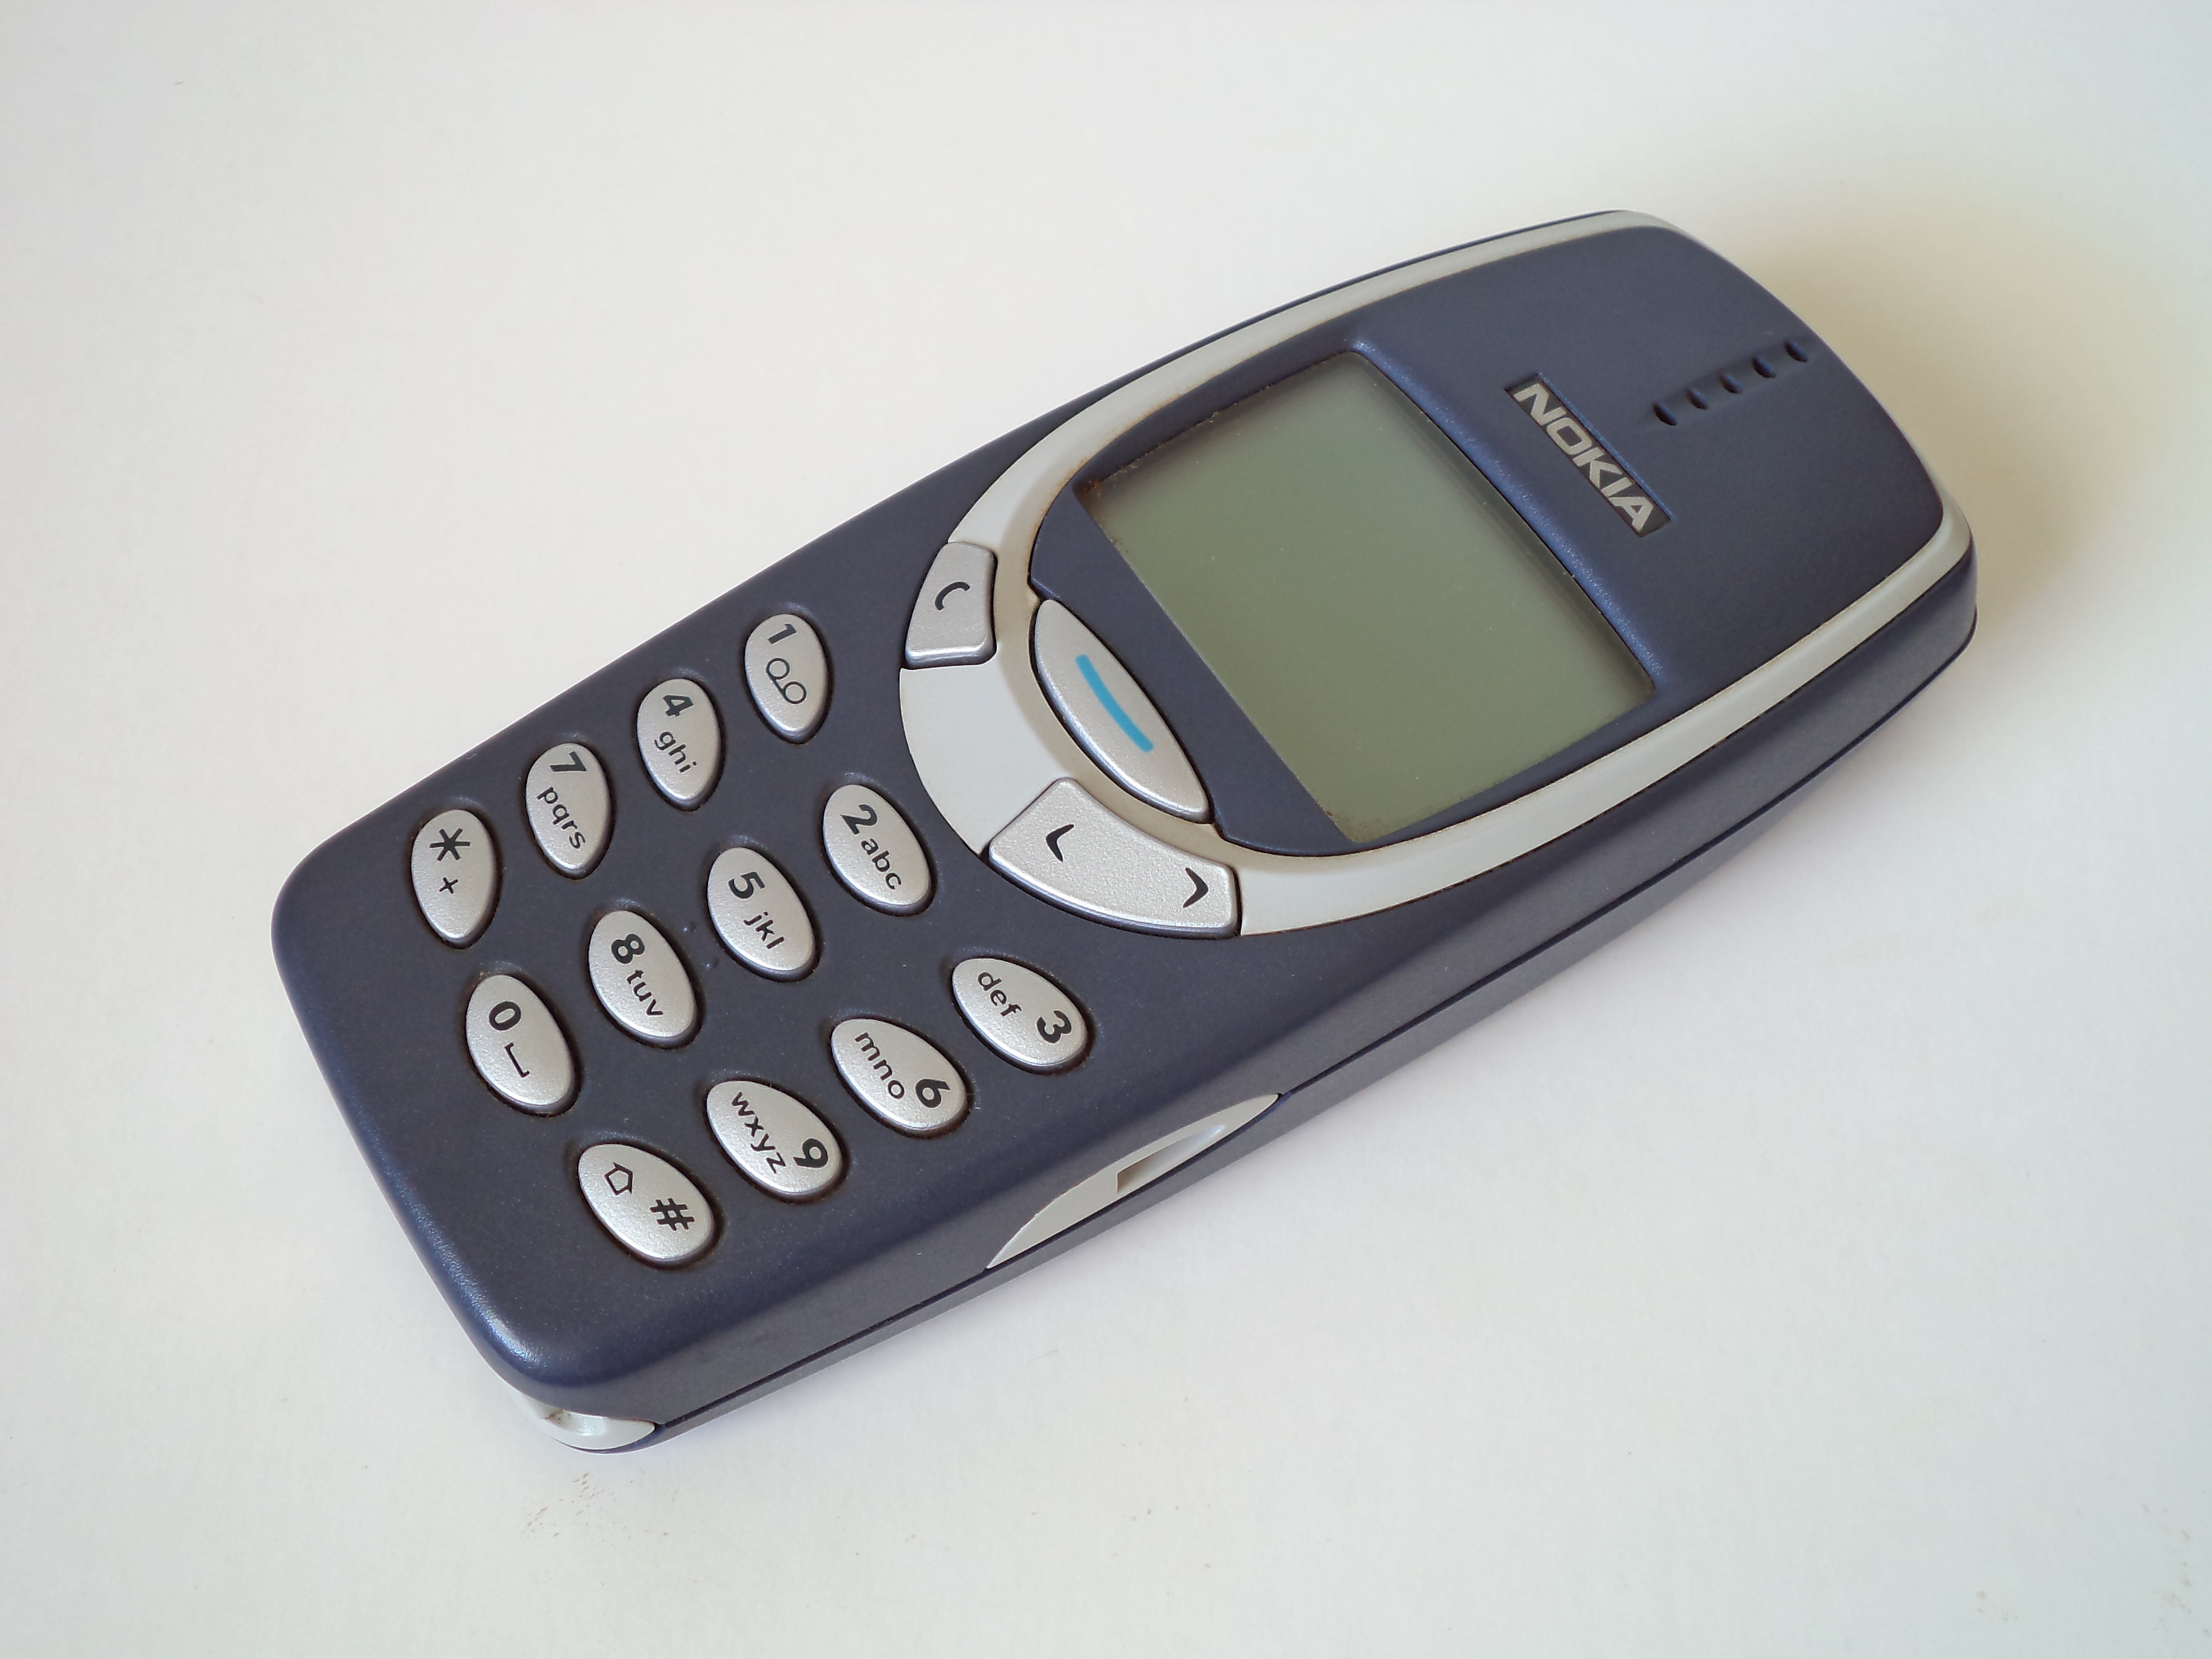 Blue Nokia 3310 free image - ảnh miễn phí Nokia 3310 màu xanh: Tận hưởng màu sắc tươi tắn và độc đáo của chiếc điện thoại Nokia 3310 màu xanh với bức ảnh miễn phí này. Tất cả được bao gồm trong chiếc ảnh chất lượng cao, cho phép bạn dễ dàng tải xuống và sử dụng trong mọi mục đích của bạn.